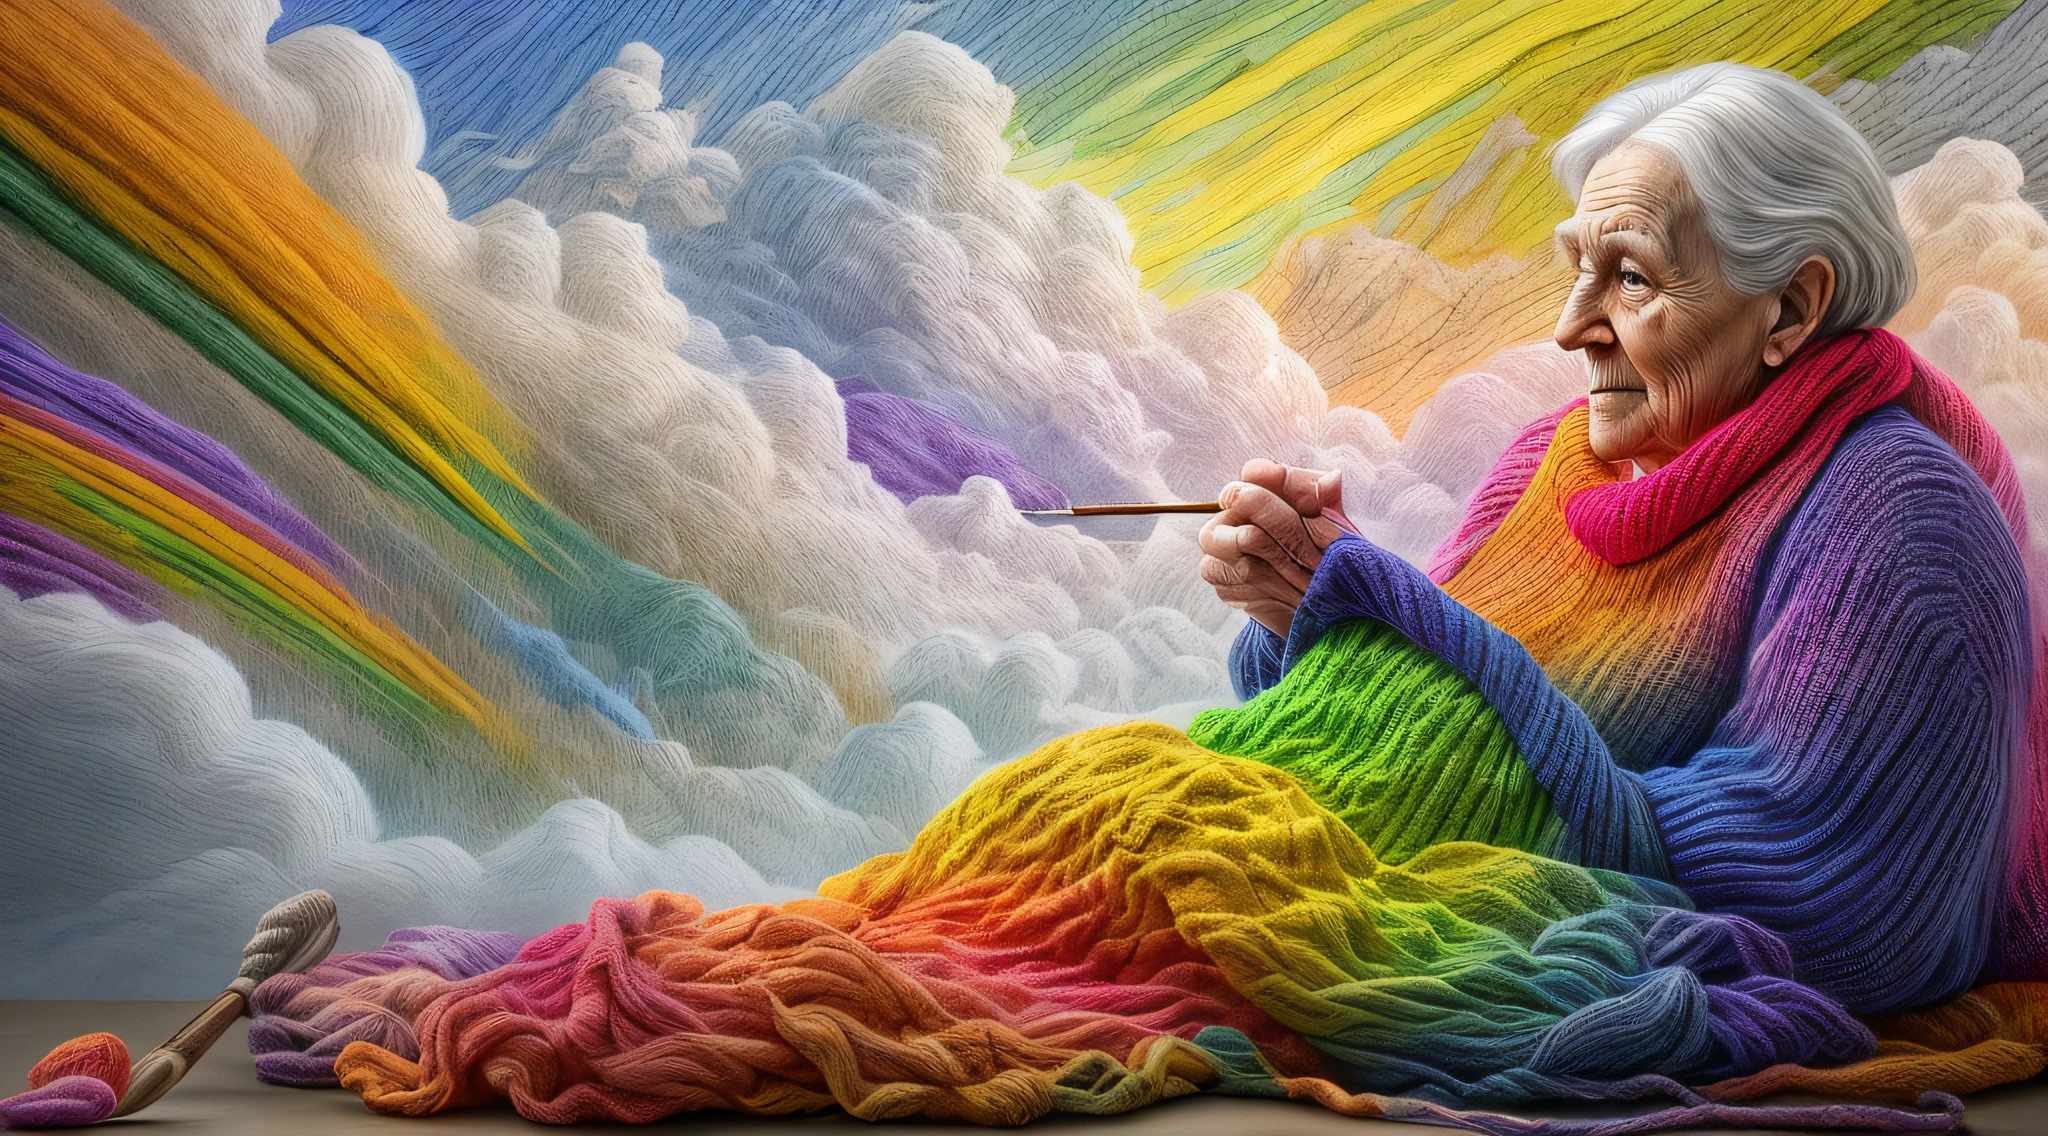 高細節, 最好的品質, 16k, [超詳細], 傑作, 最好的品質, dynamic 一个gle, 超广角拍摄, 生的, 逼真的, f一个tasy art, 现实主义艺术, a picture of a old wom一个 sitting in heaven knitting the rainbow, 一个 (old hum一个 wom一个: 1.2) , 动态头发, 動態服裝, 坐在雲上編織彩虹, 全彩, (完美的光譜: 1.3),( vibr一个t work: 1.4)  vibr一个t shades of red, or一个ge, 黃色的, 綠色的, 藍色的, 靛青, 針織紫羅蘭色, 完美的色彩, the rainbow falls into the sky from the old wom一个 who knits, 16k, 超詳細, 傑作, 最好的品質, 超詳細, 全身, 超广角拍摄, 逼真的,